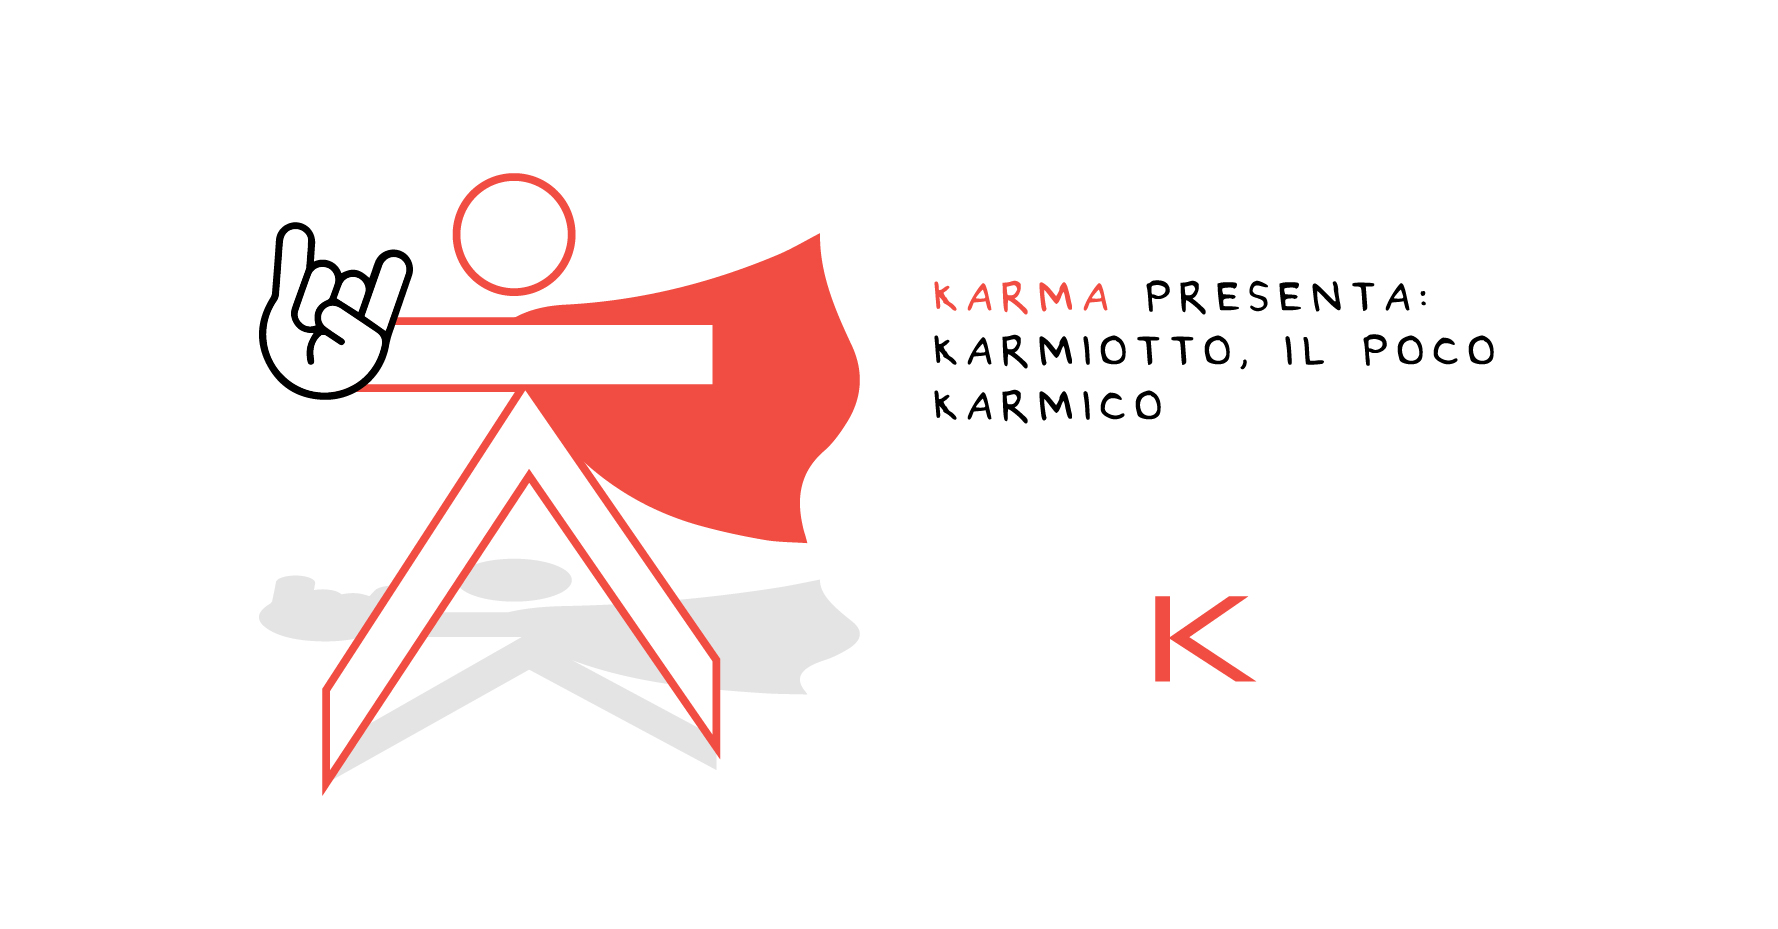 Karma Communication - Vi presentiamo Karmiotto